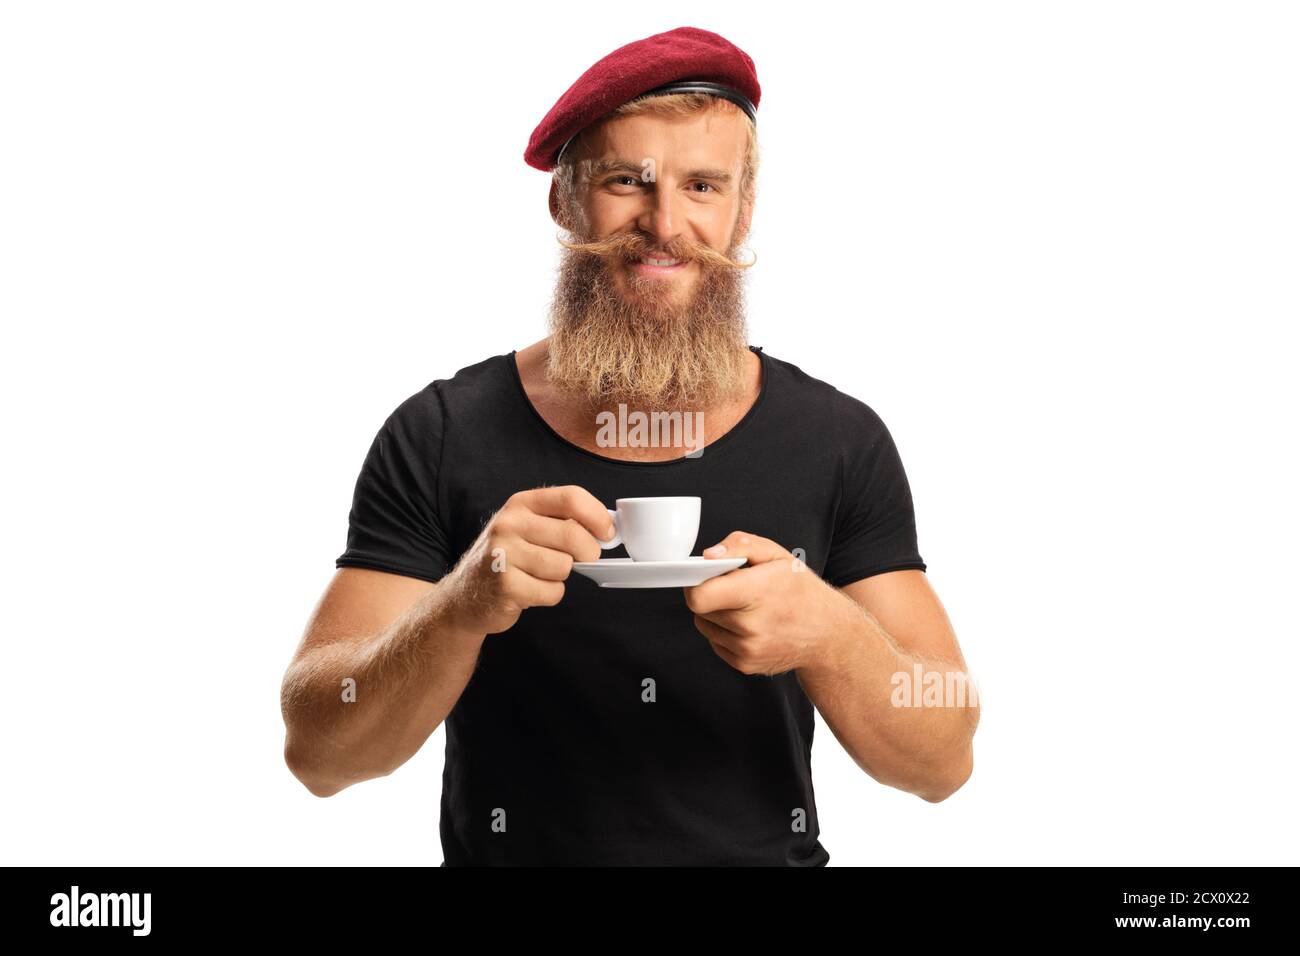 Ragazzo bearded con baffi che indossa un berretto rosso e. caffè espresso da bere isolato su sfondo grigio Foto Stock